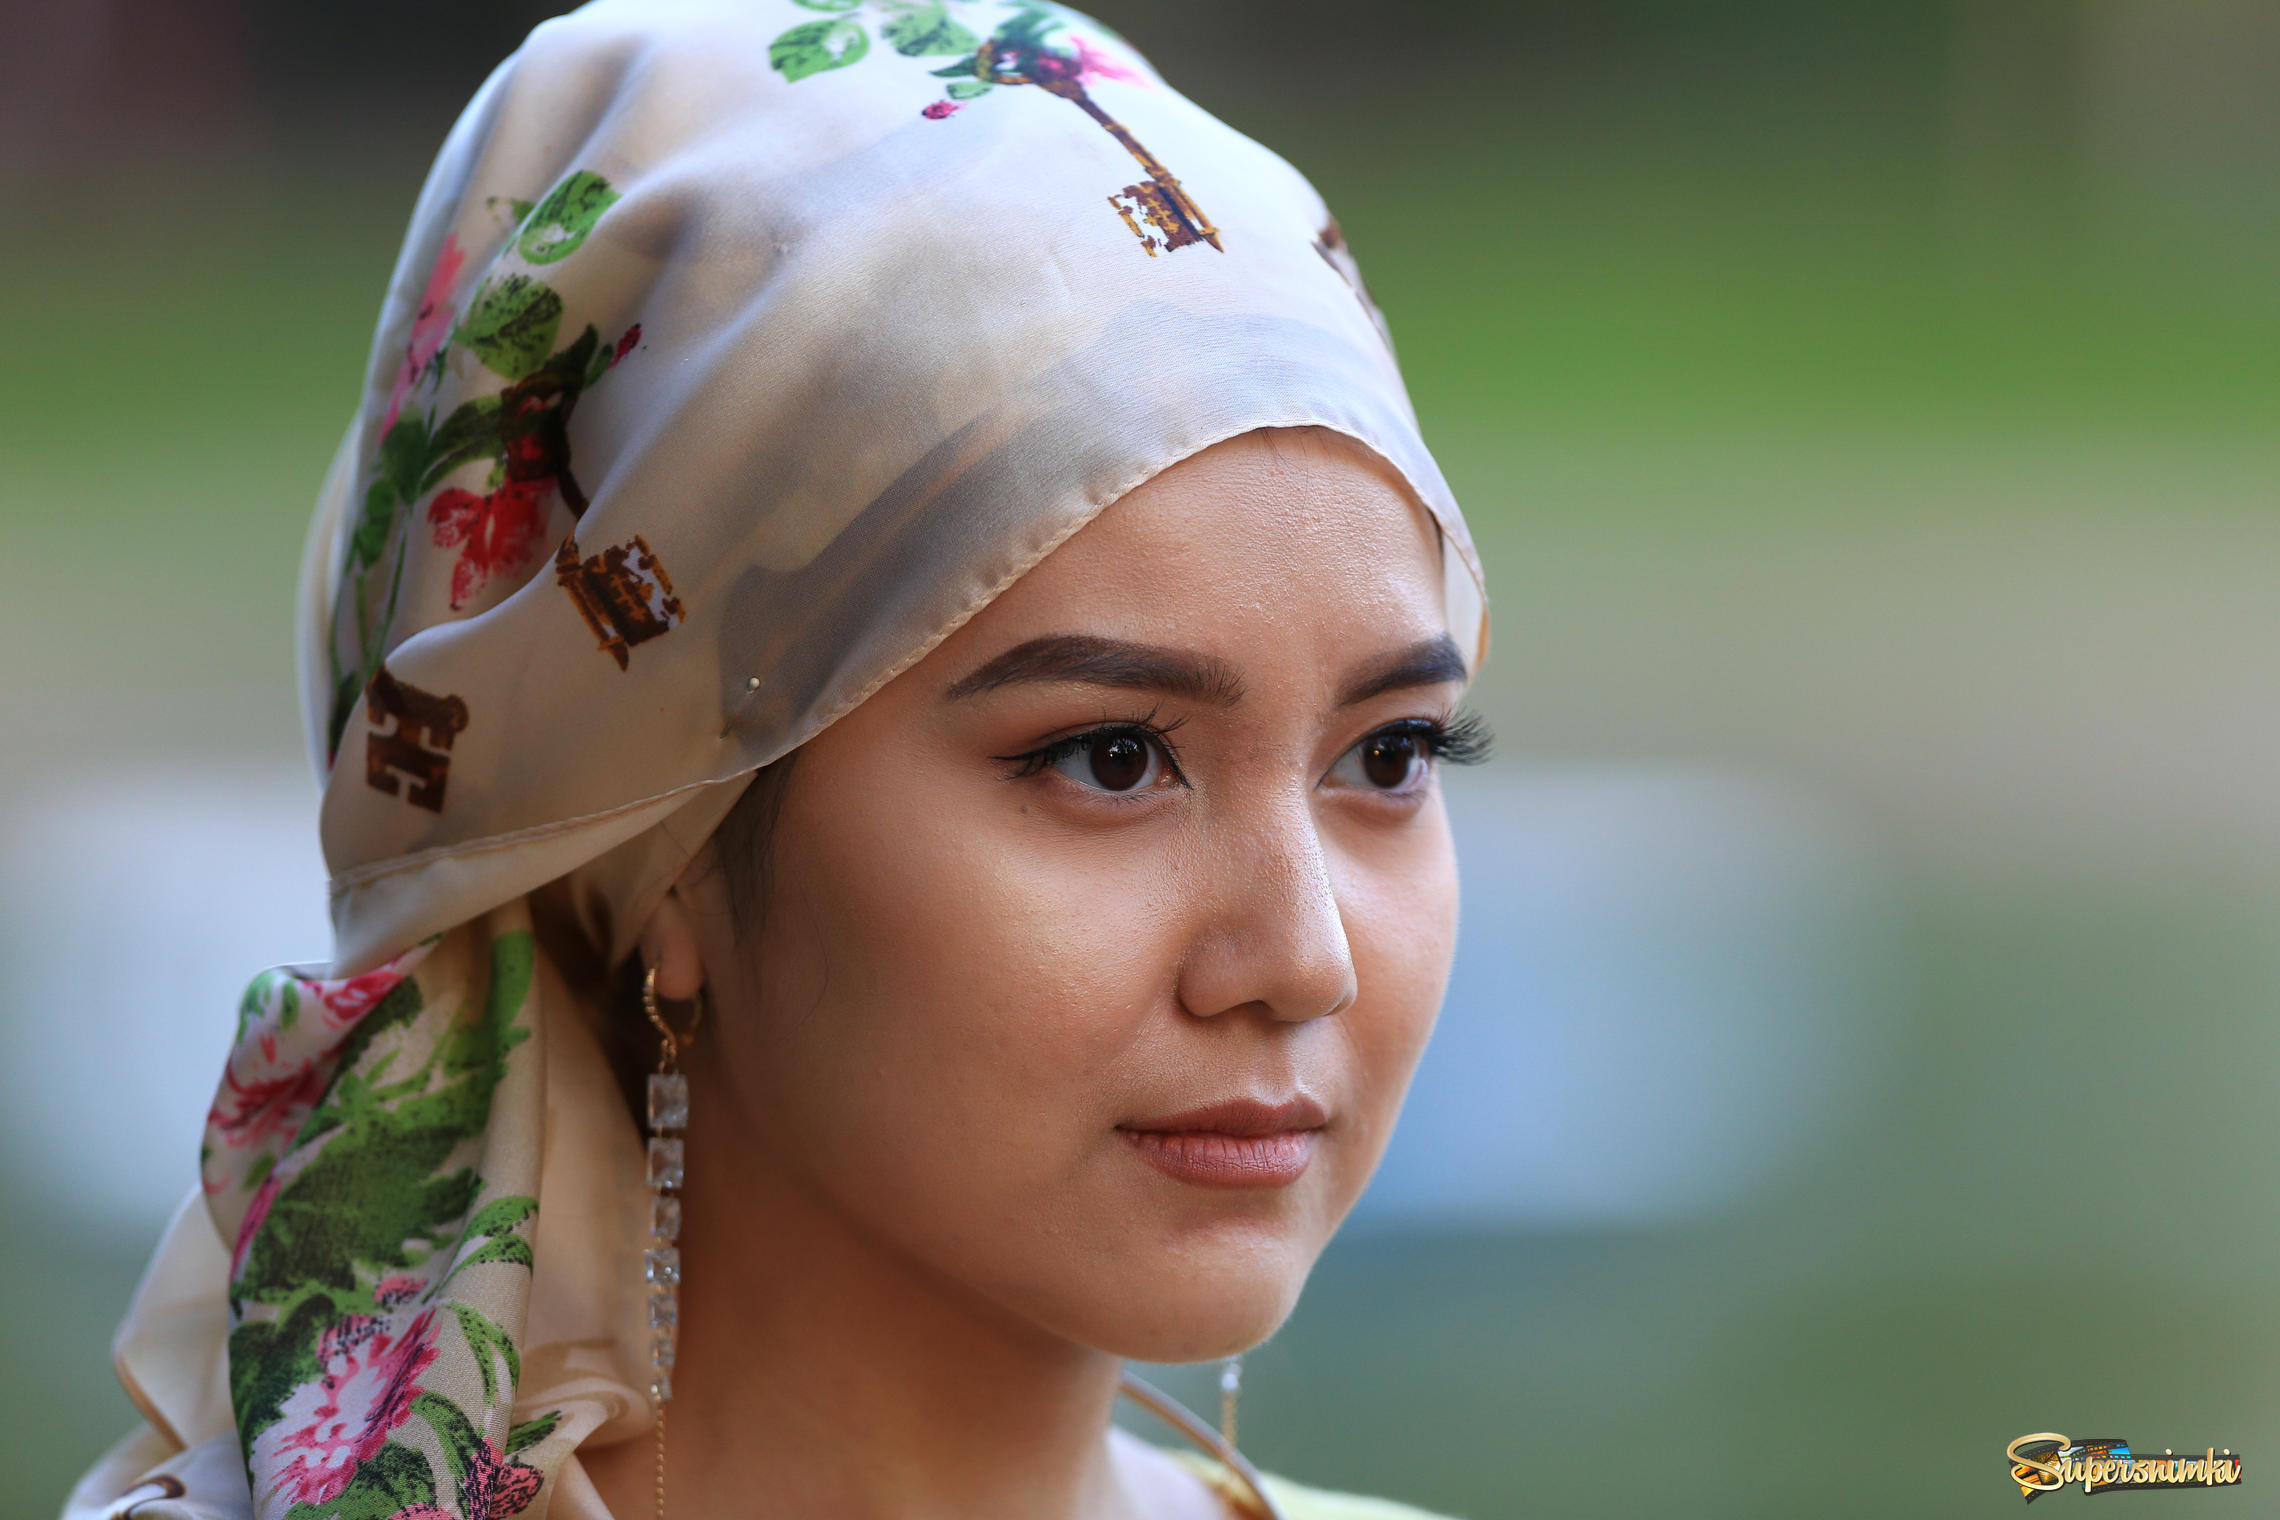 Узбечка таджичка. Узбекские женщины. Девушки средней Азии. Самые красивые девушки средней Азии. Платок узбекских женщин.